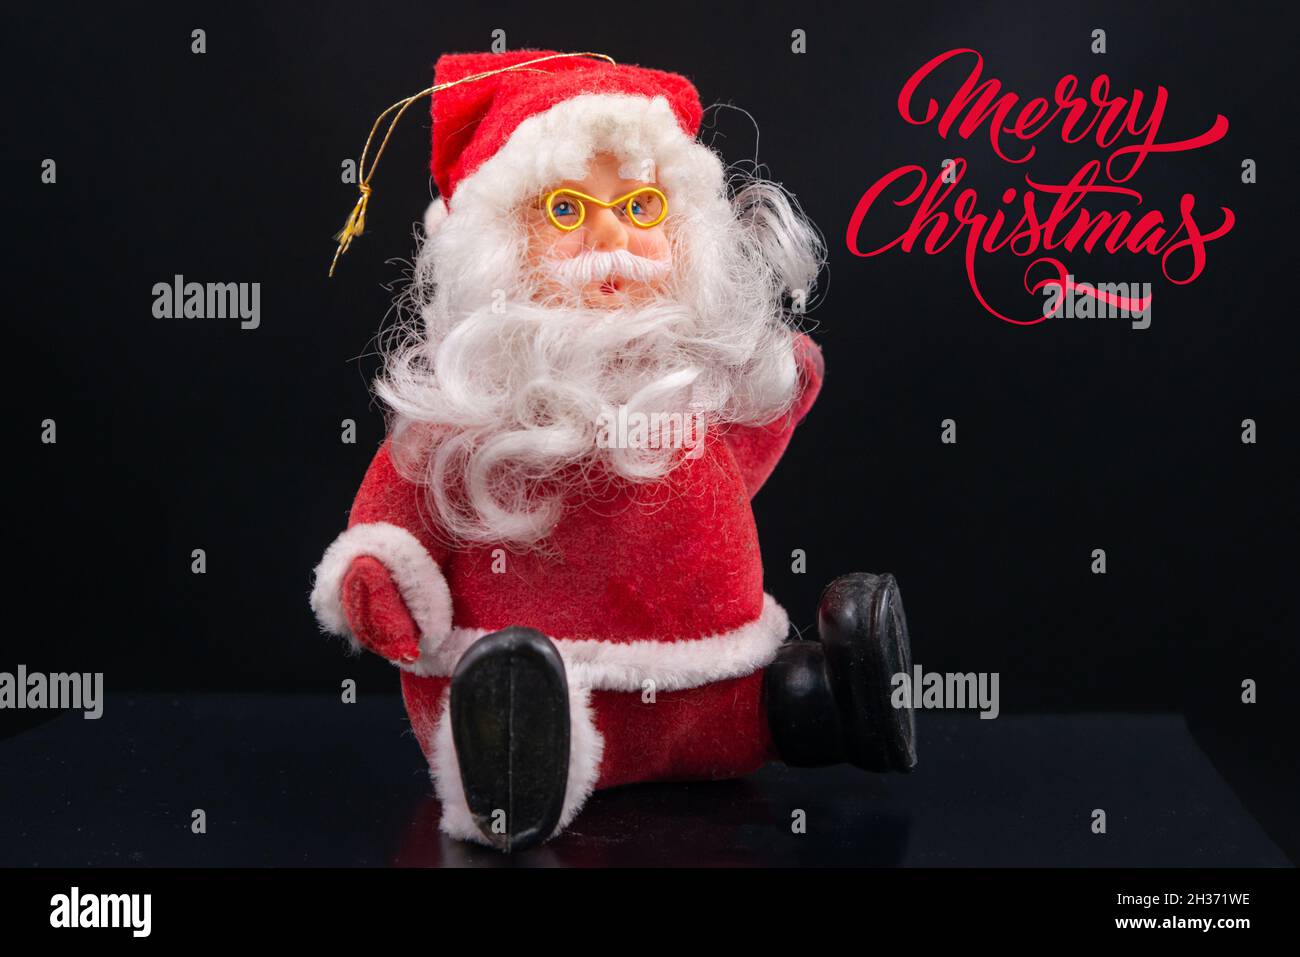 carte de noël avec jouets du père noël avec costume et chapeau rouge, barbe blanche et lunettes dorées isolées sur fond noir.Joyeux Noël Banque D'Images